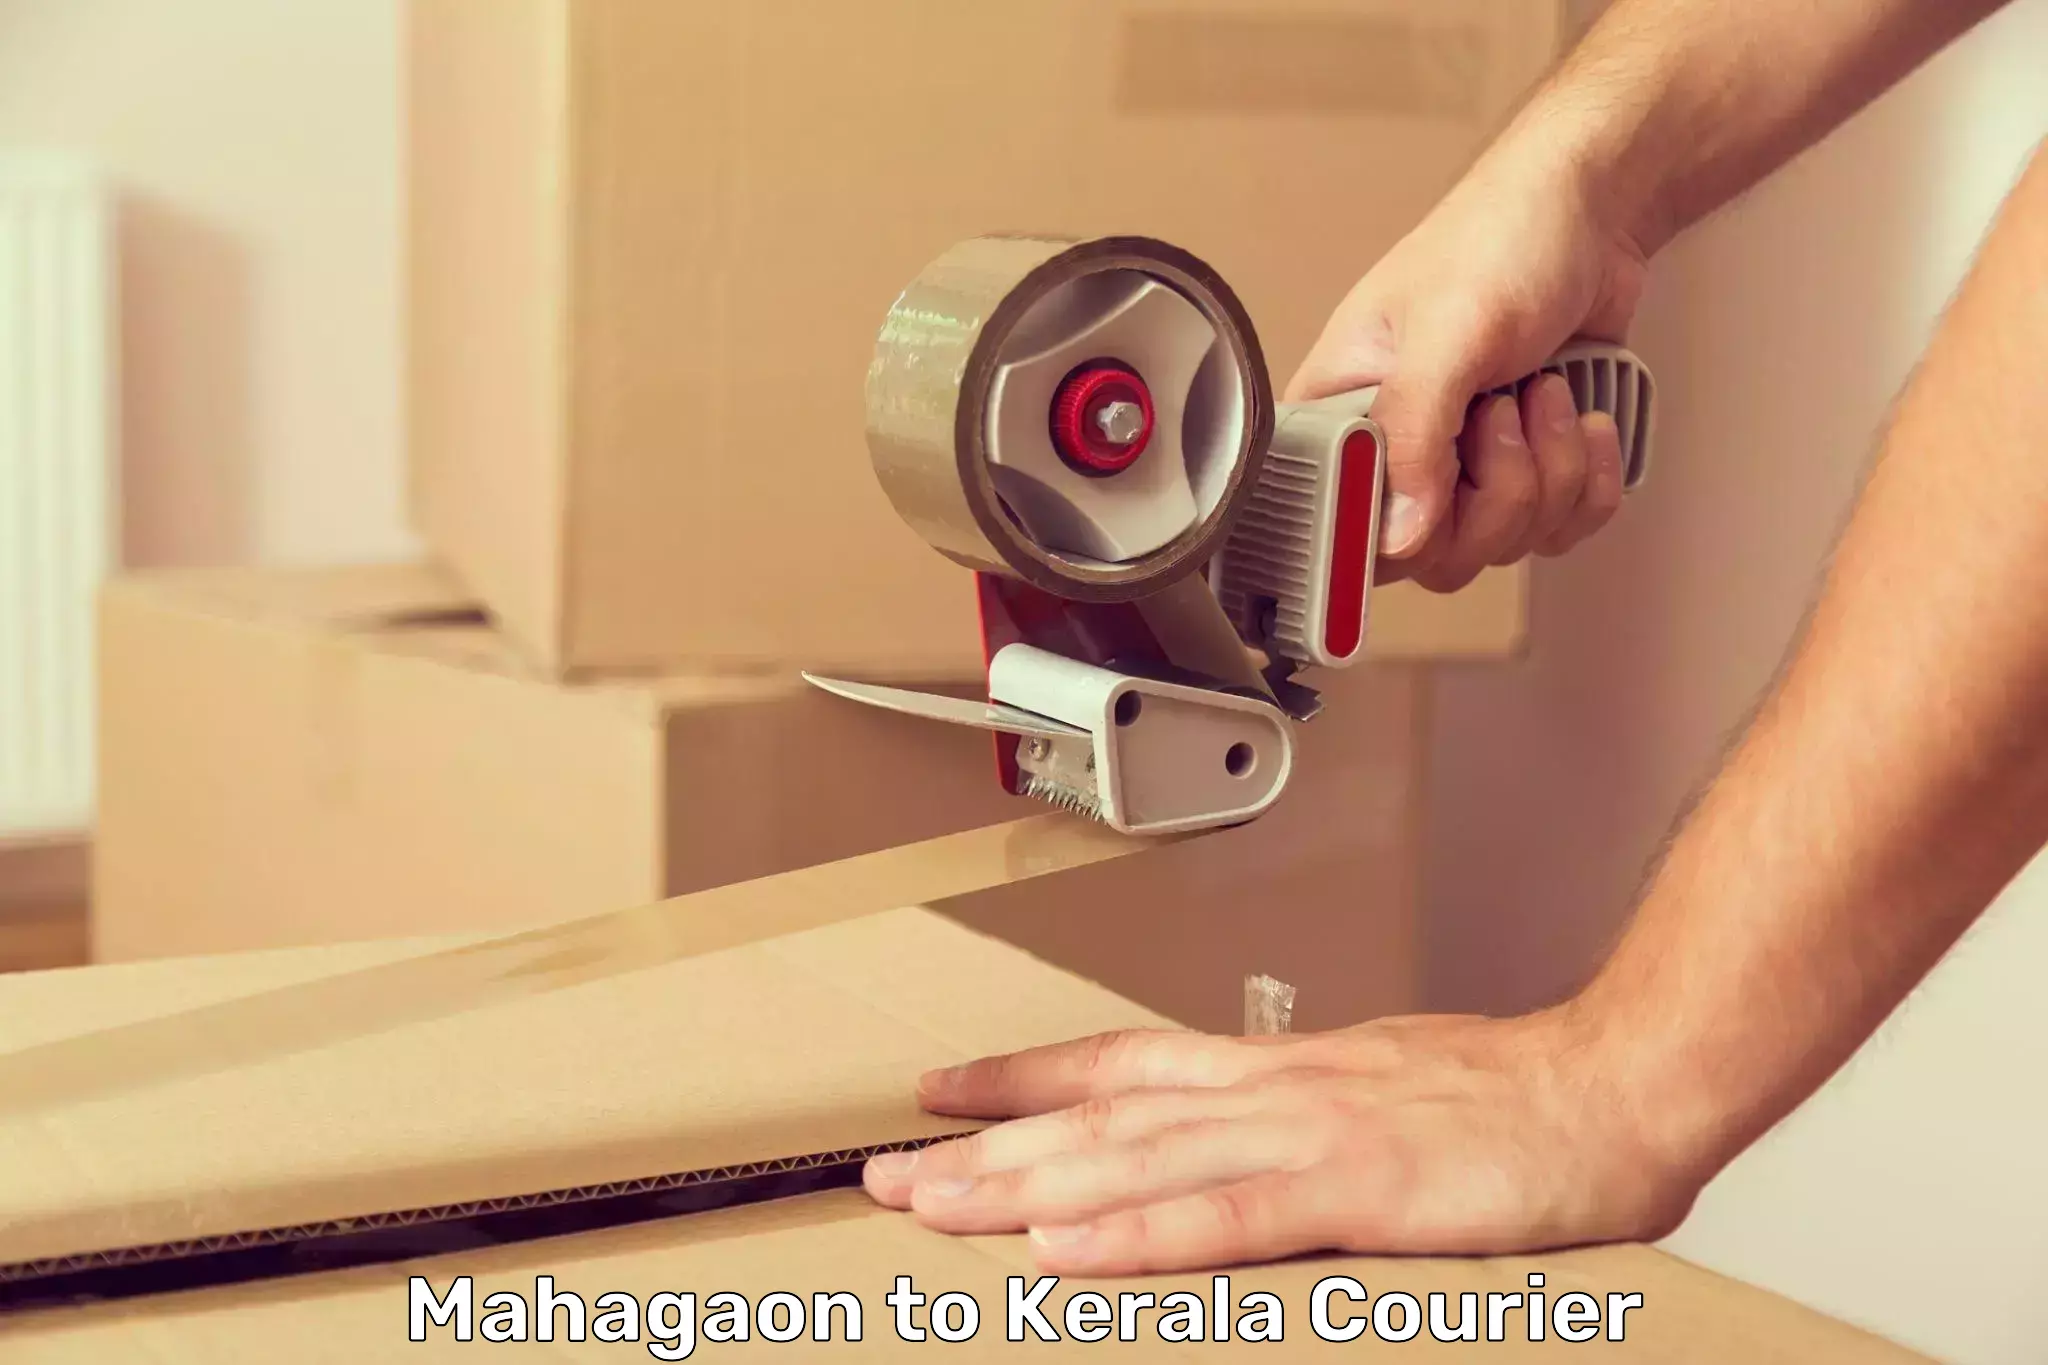 International parcel service Mahagaon to Kerala